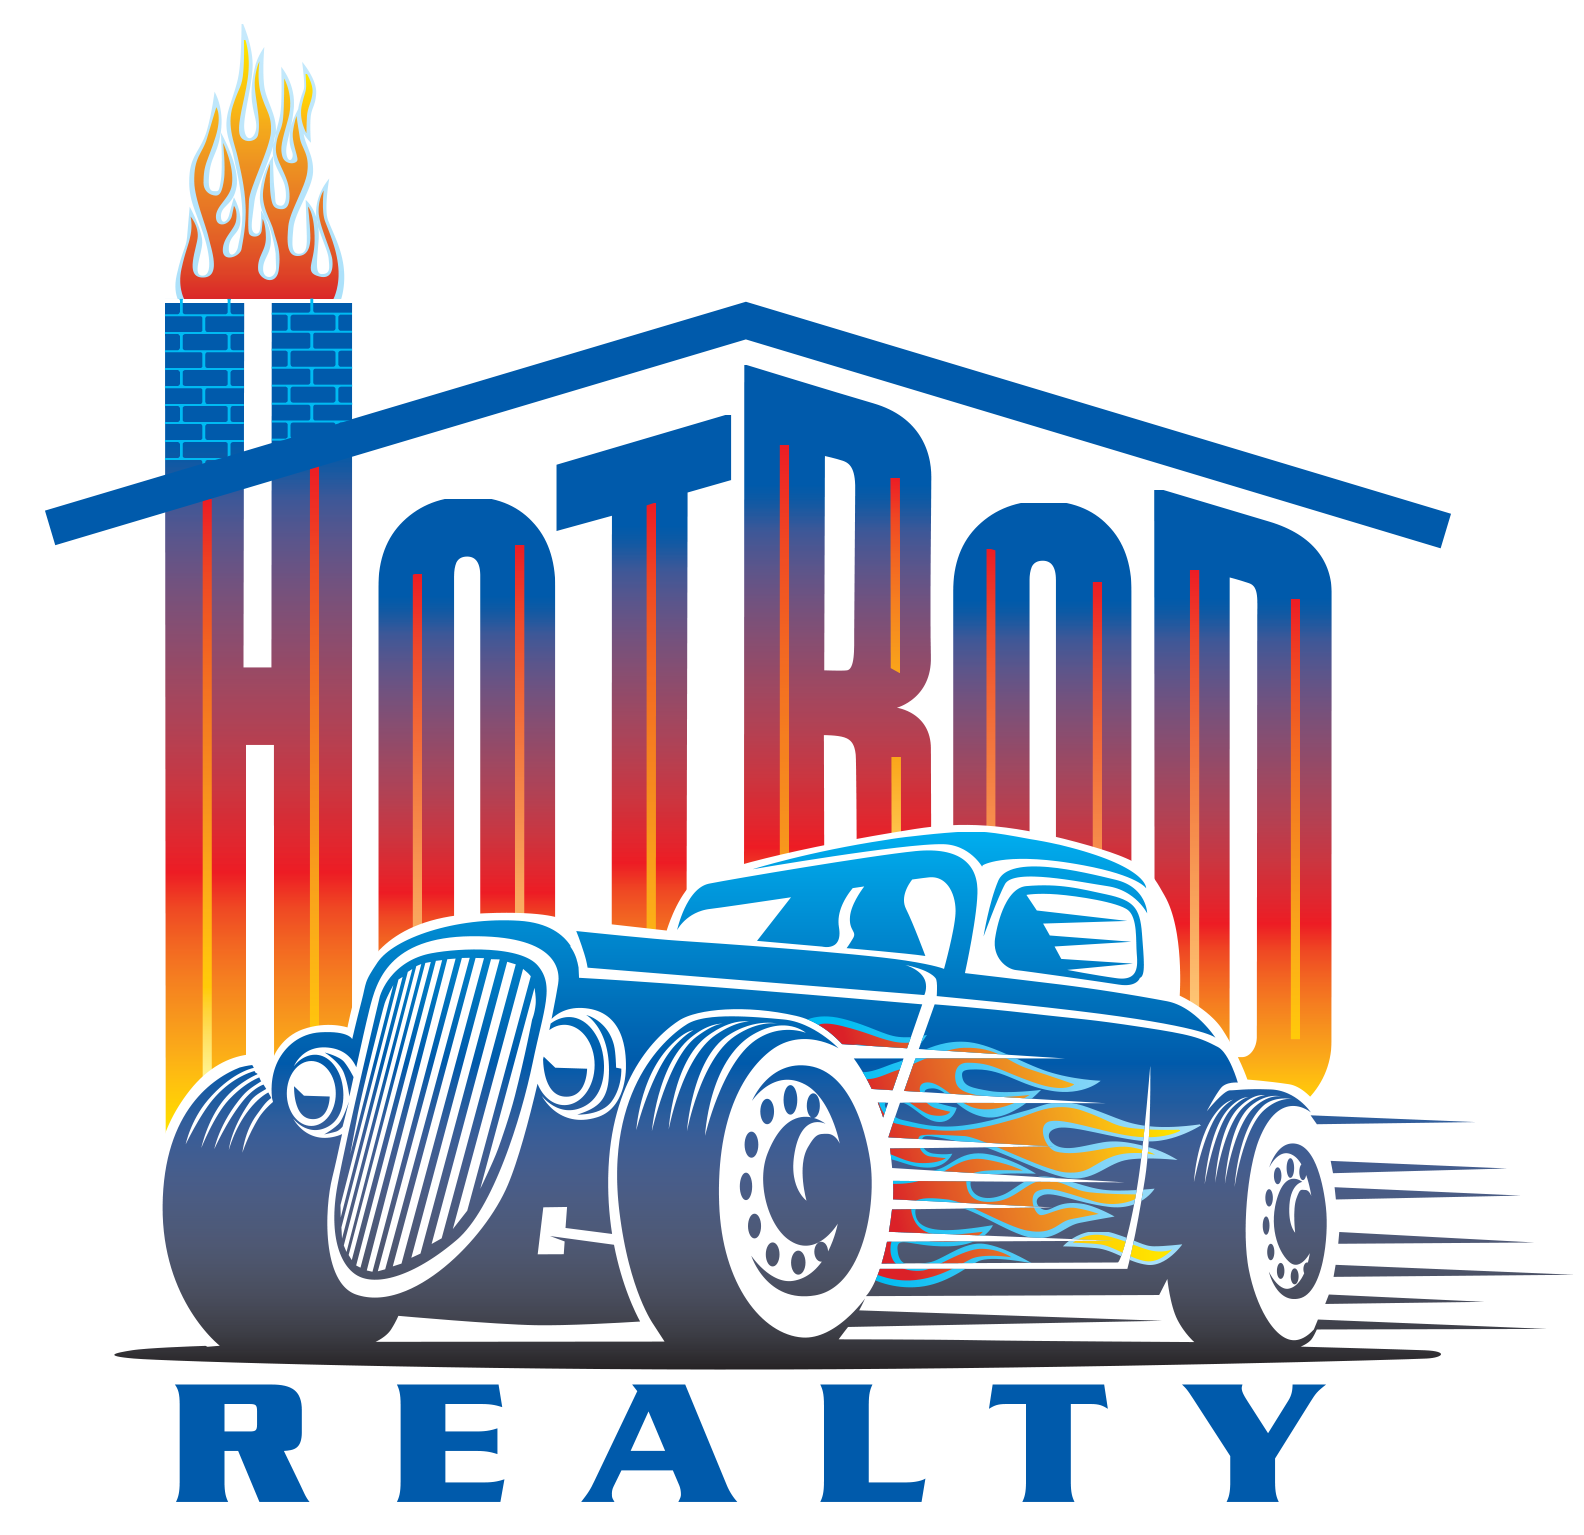 Hot Rod Realty